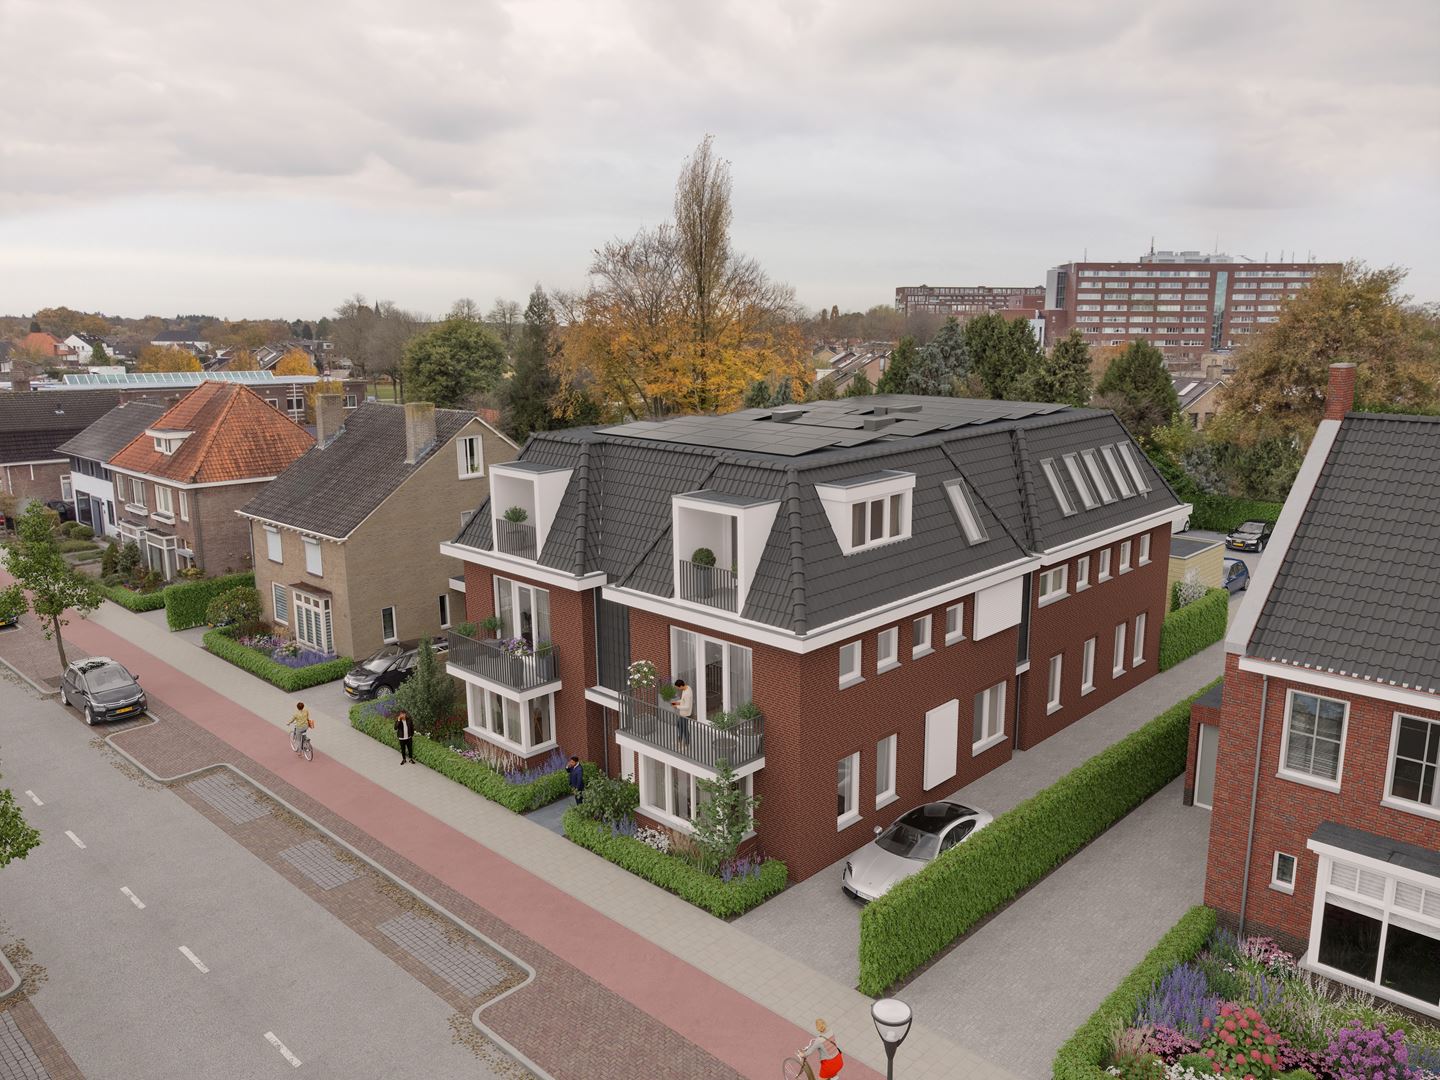 Woning in Veldhoven - Dorpstraat